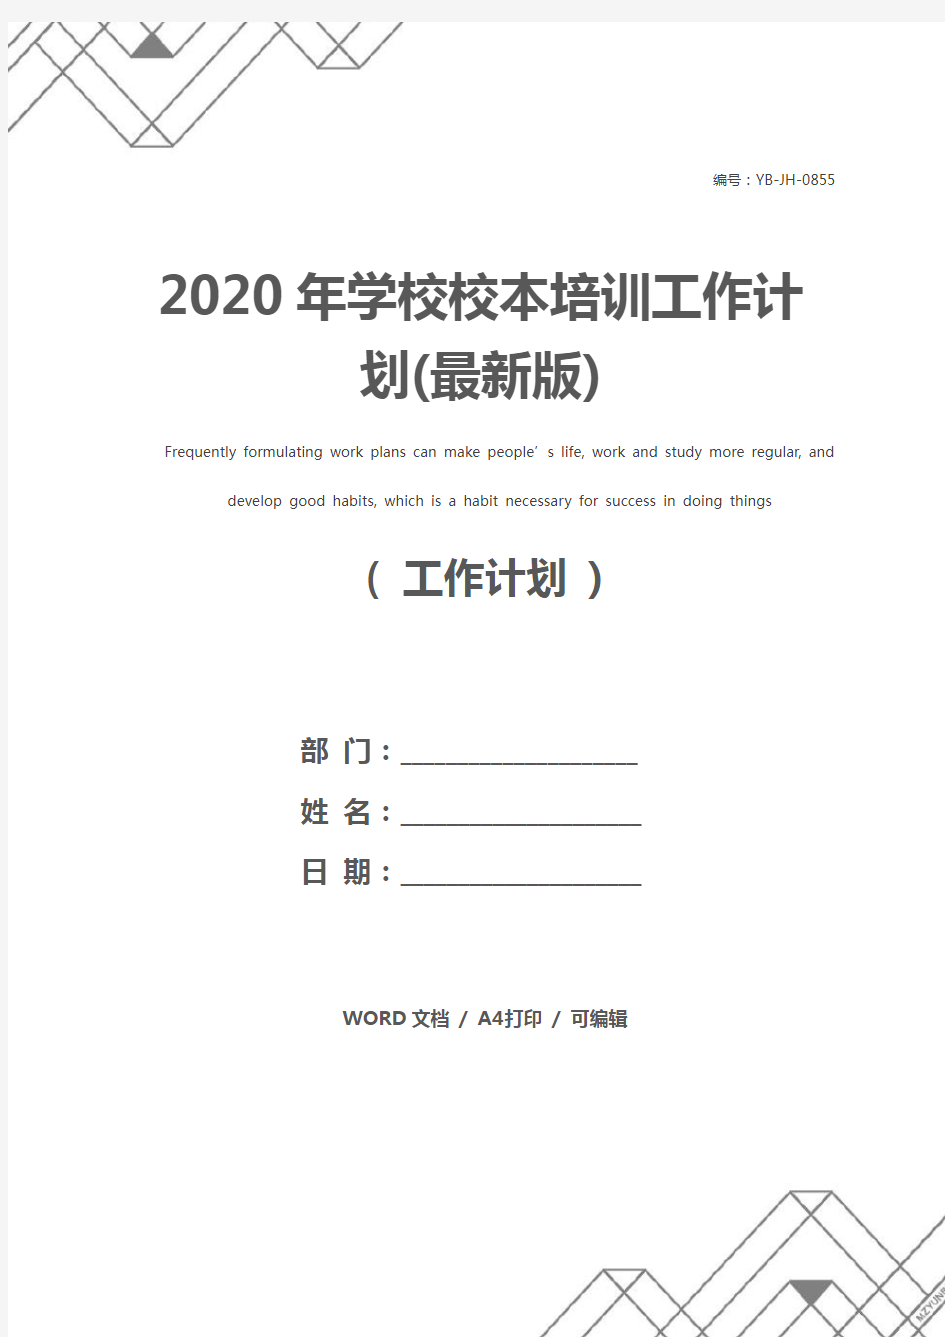 2020年学校校本培训工作计划(最新版)